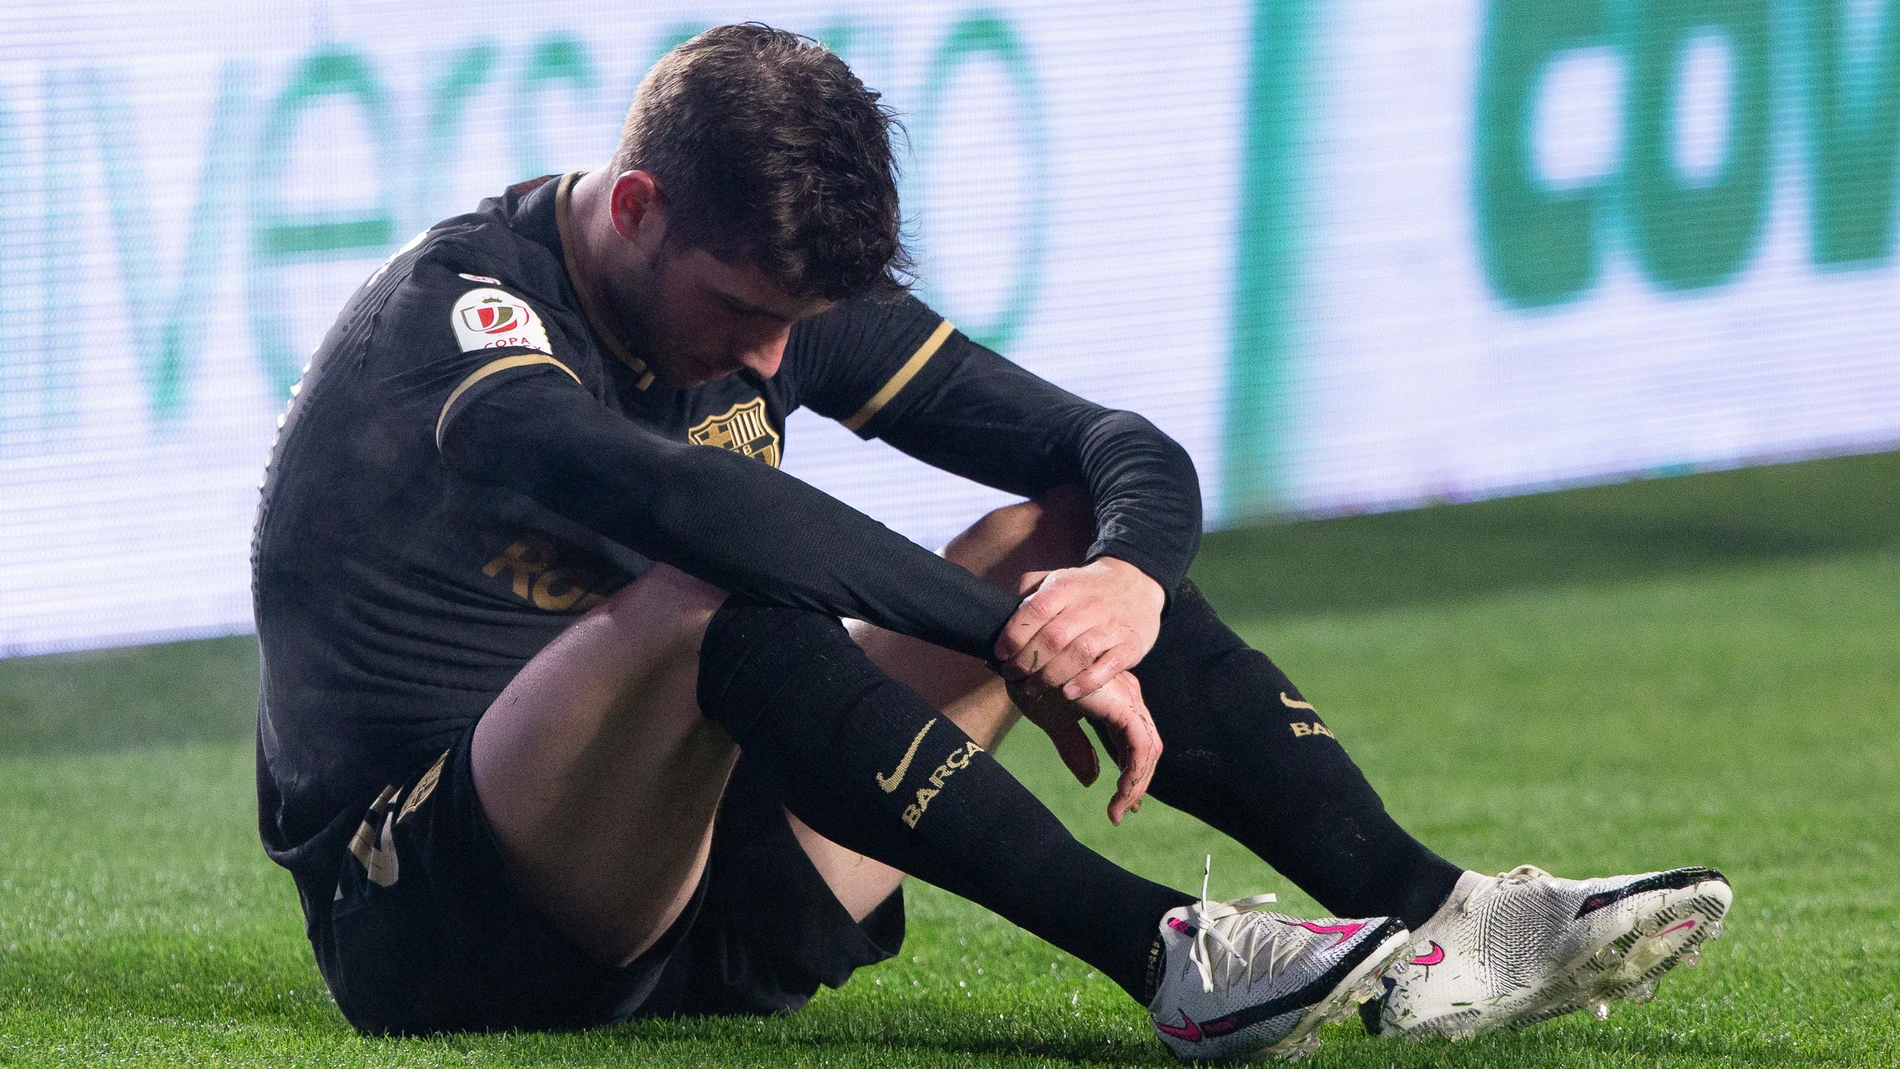 Sergi Roberto ha sufrido tres lesiones esta temporada.